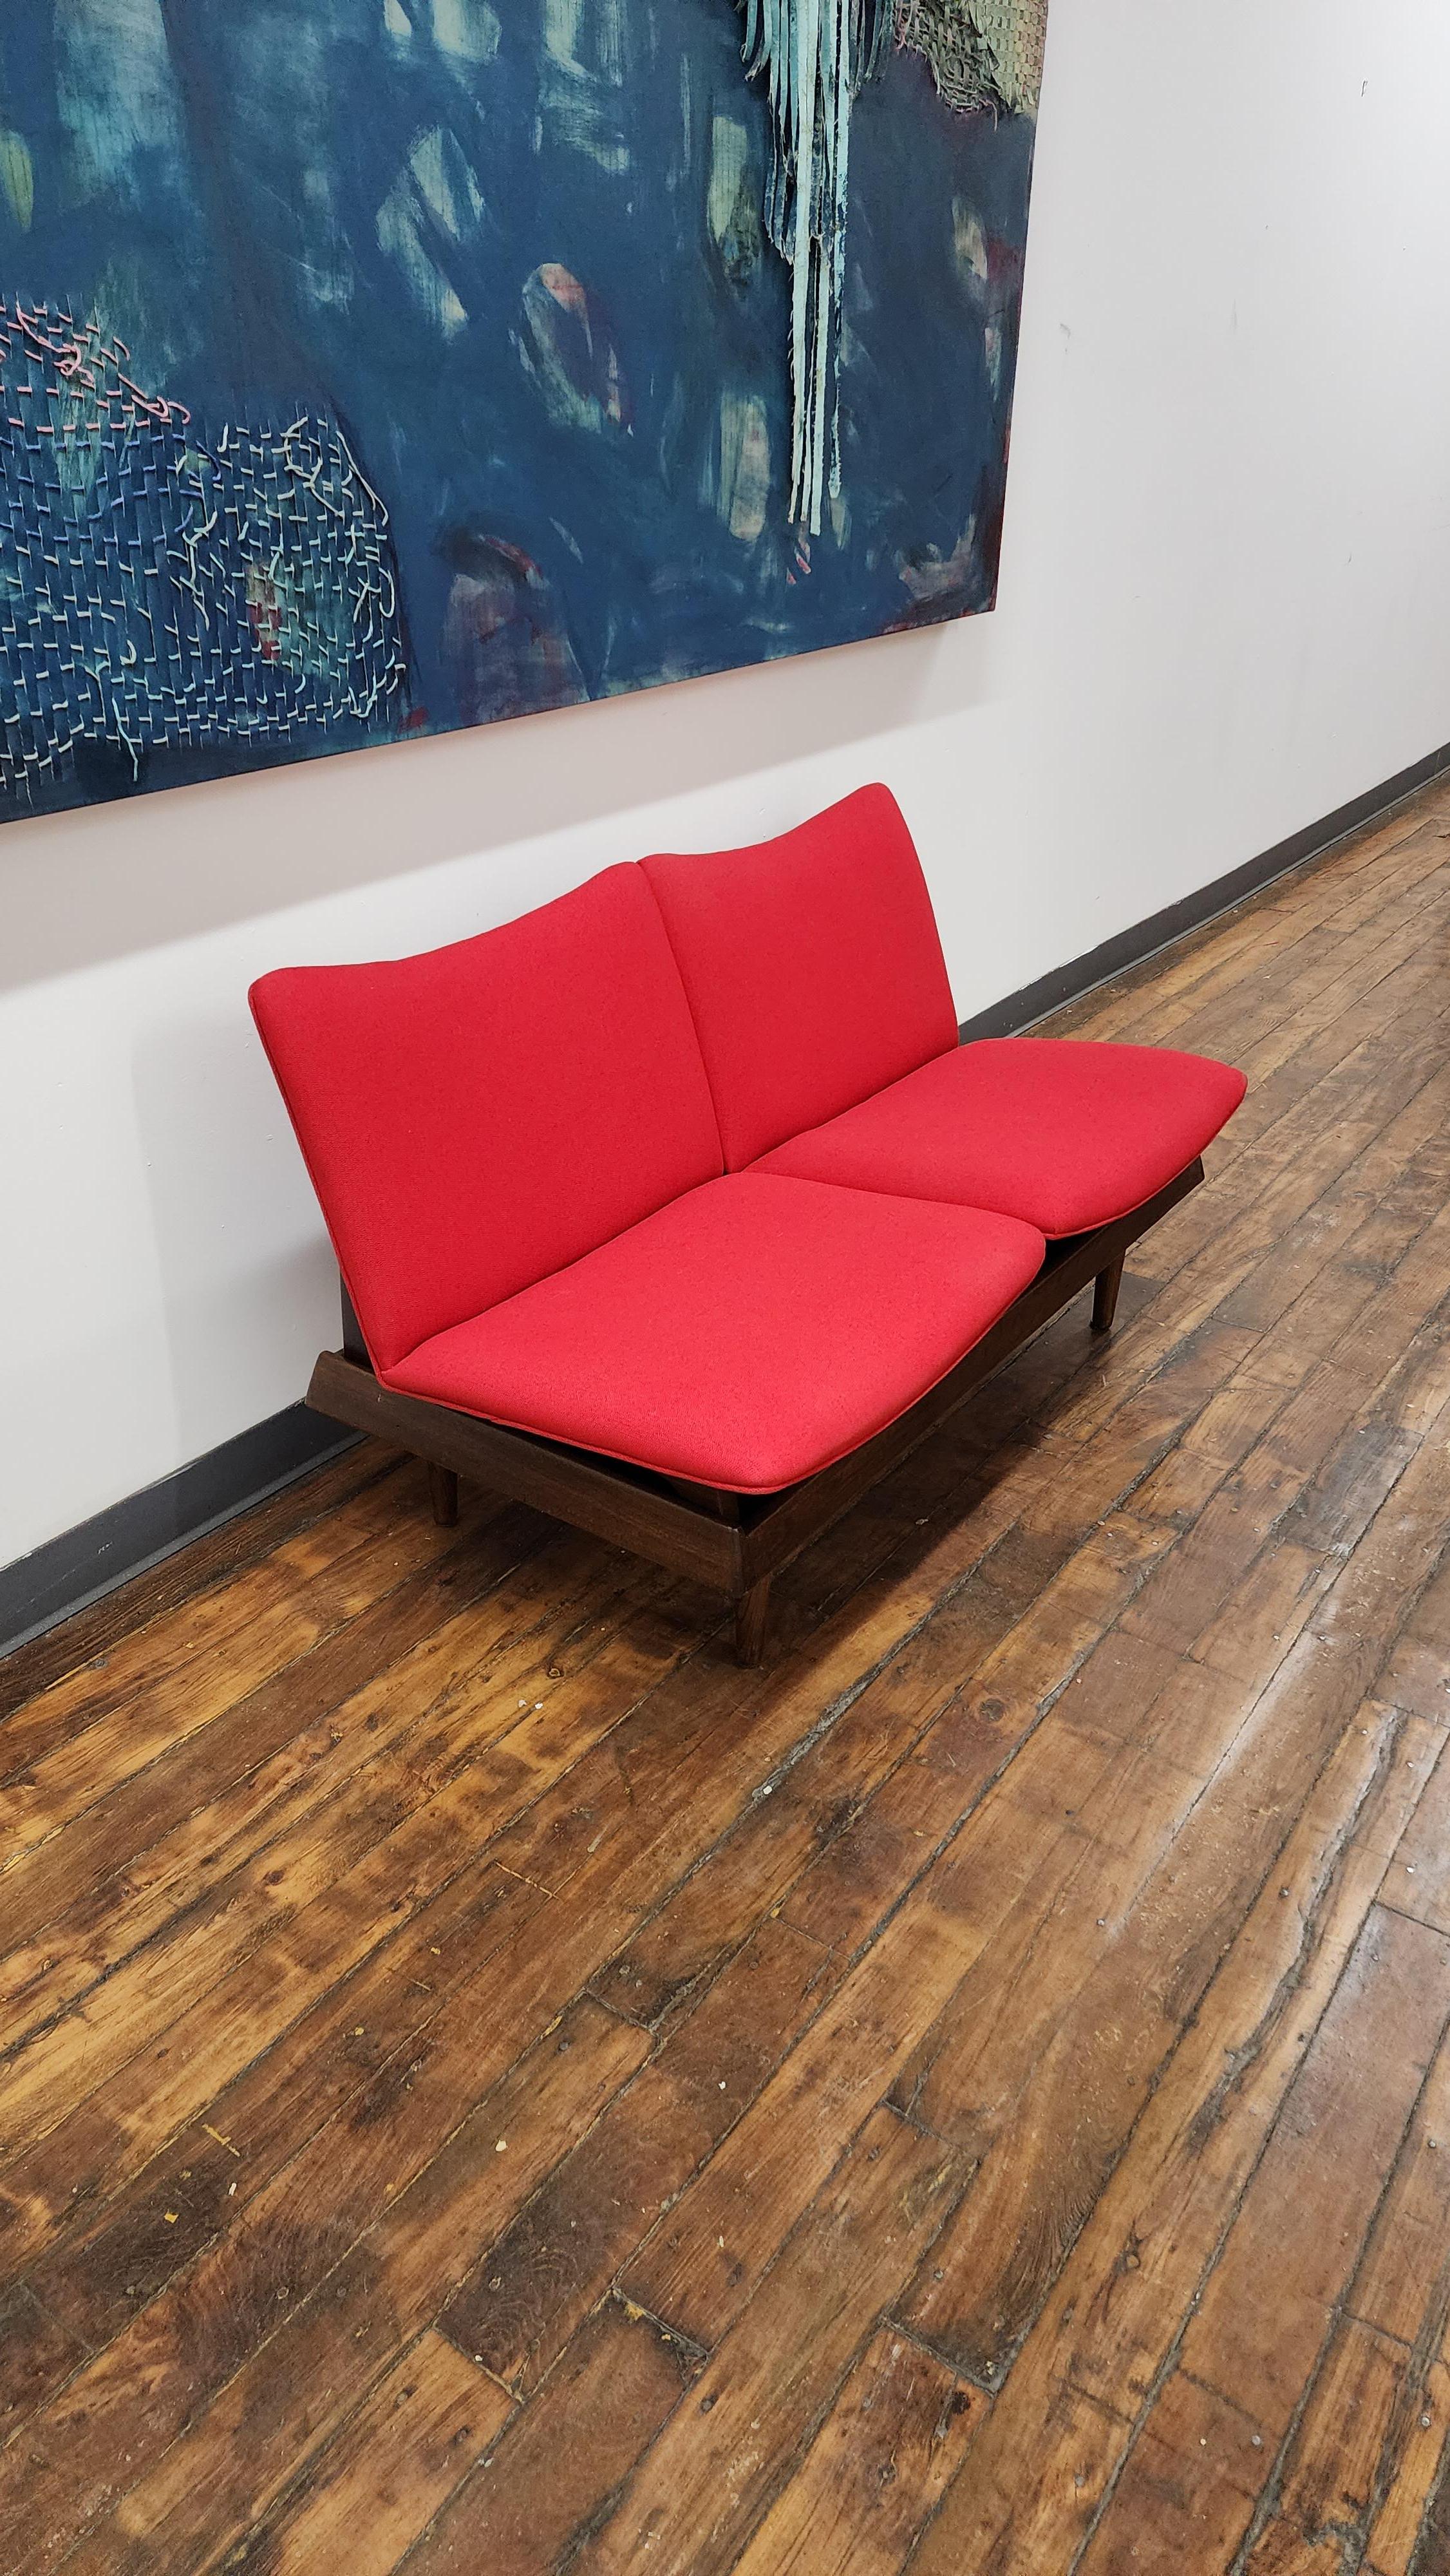 Magnifique canapé modulaire 2 places de Gerald McCabe.  l'ensemble a été entièrement remis à neuf et dispose d'une nouvelle sellerie en maharam rouge.  les sièges modulaires peuvent être retirés et utilisés comme sièges au sol, et la base peut être